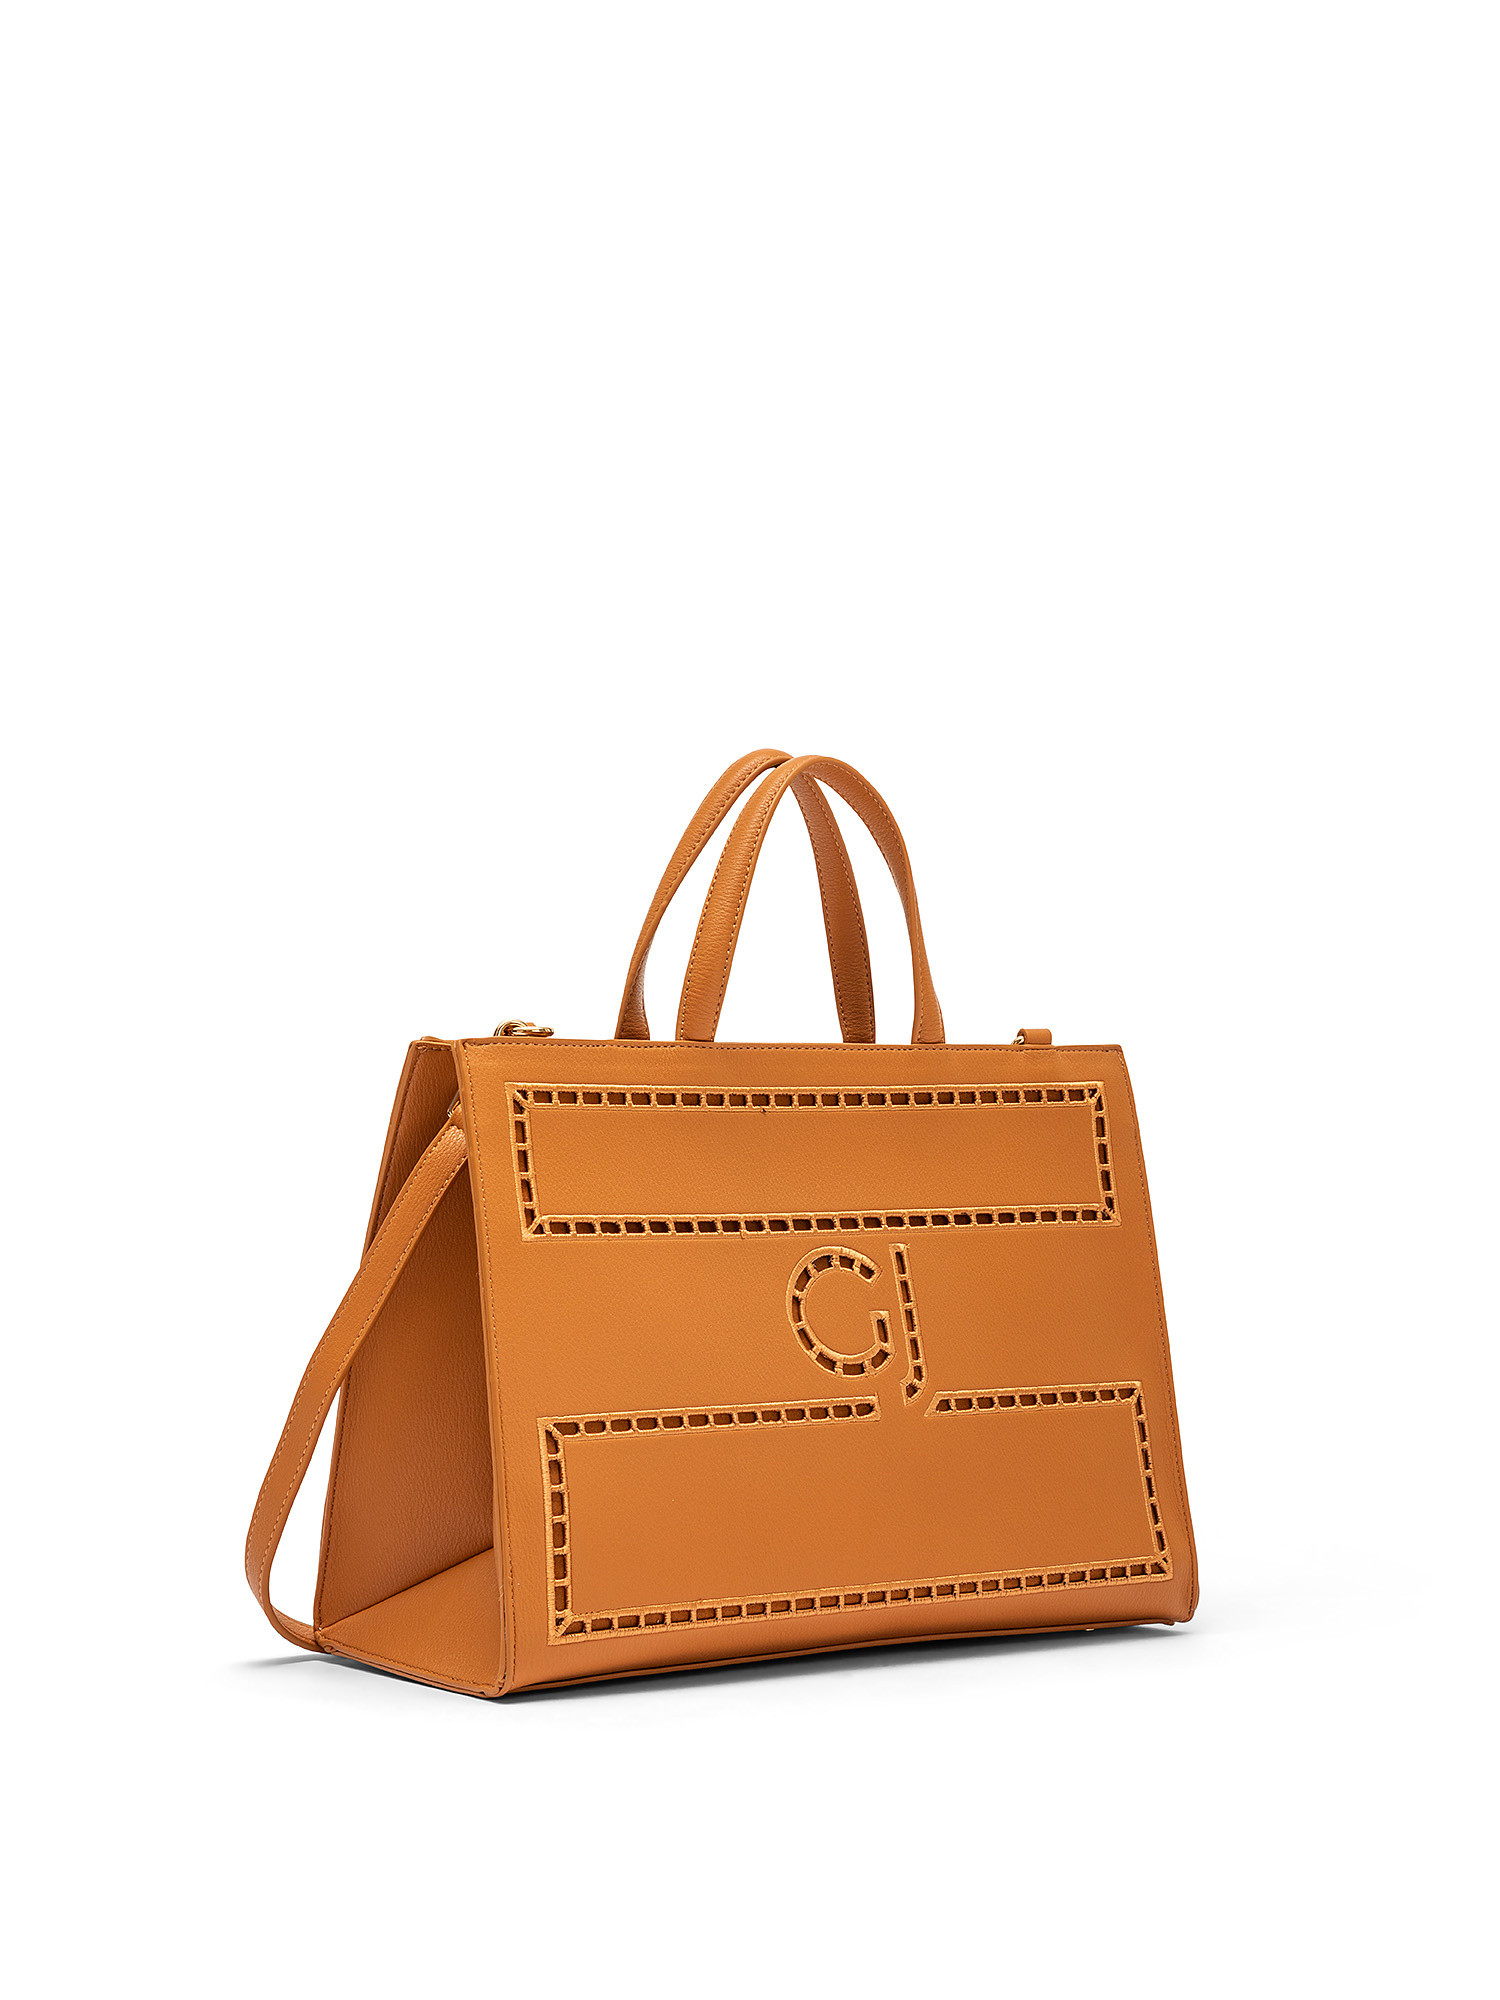 Shopping bag Zelda Ajour, Leather Brown, large image number 1